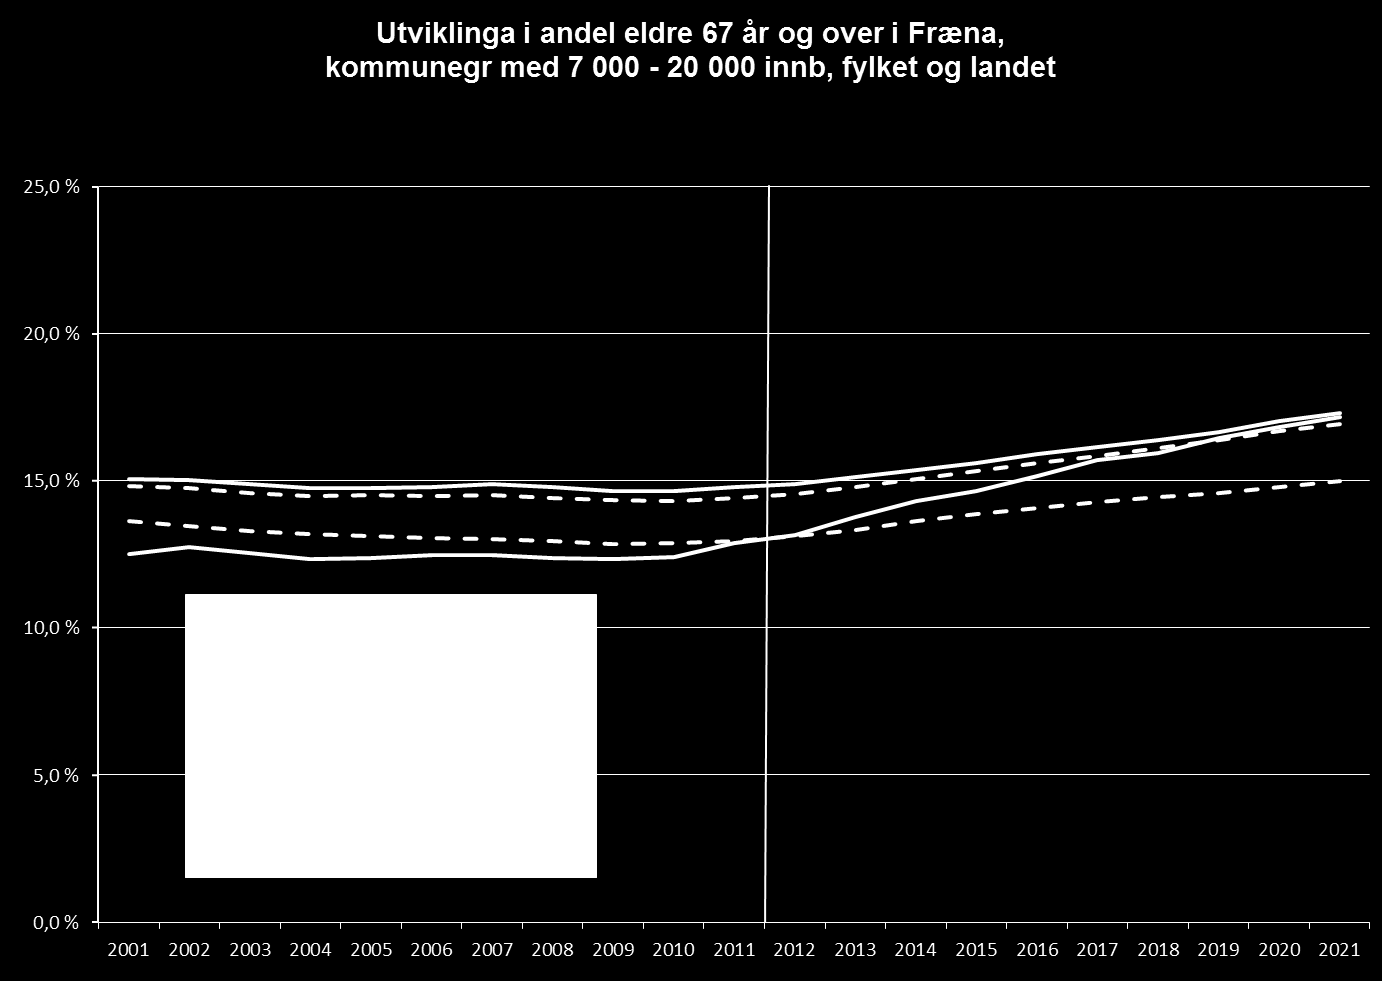 Figur 3: Utviklinga i andel eldre 67 år og over, Fræna kommunegruppe 7000-20000, fylket og landet (kjelde: fylkeskommunen).